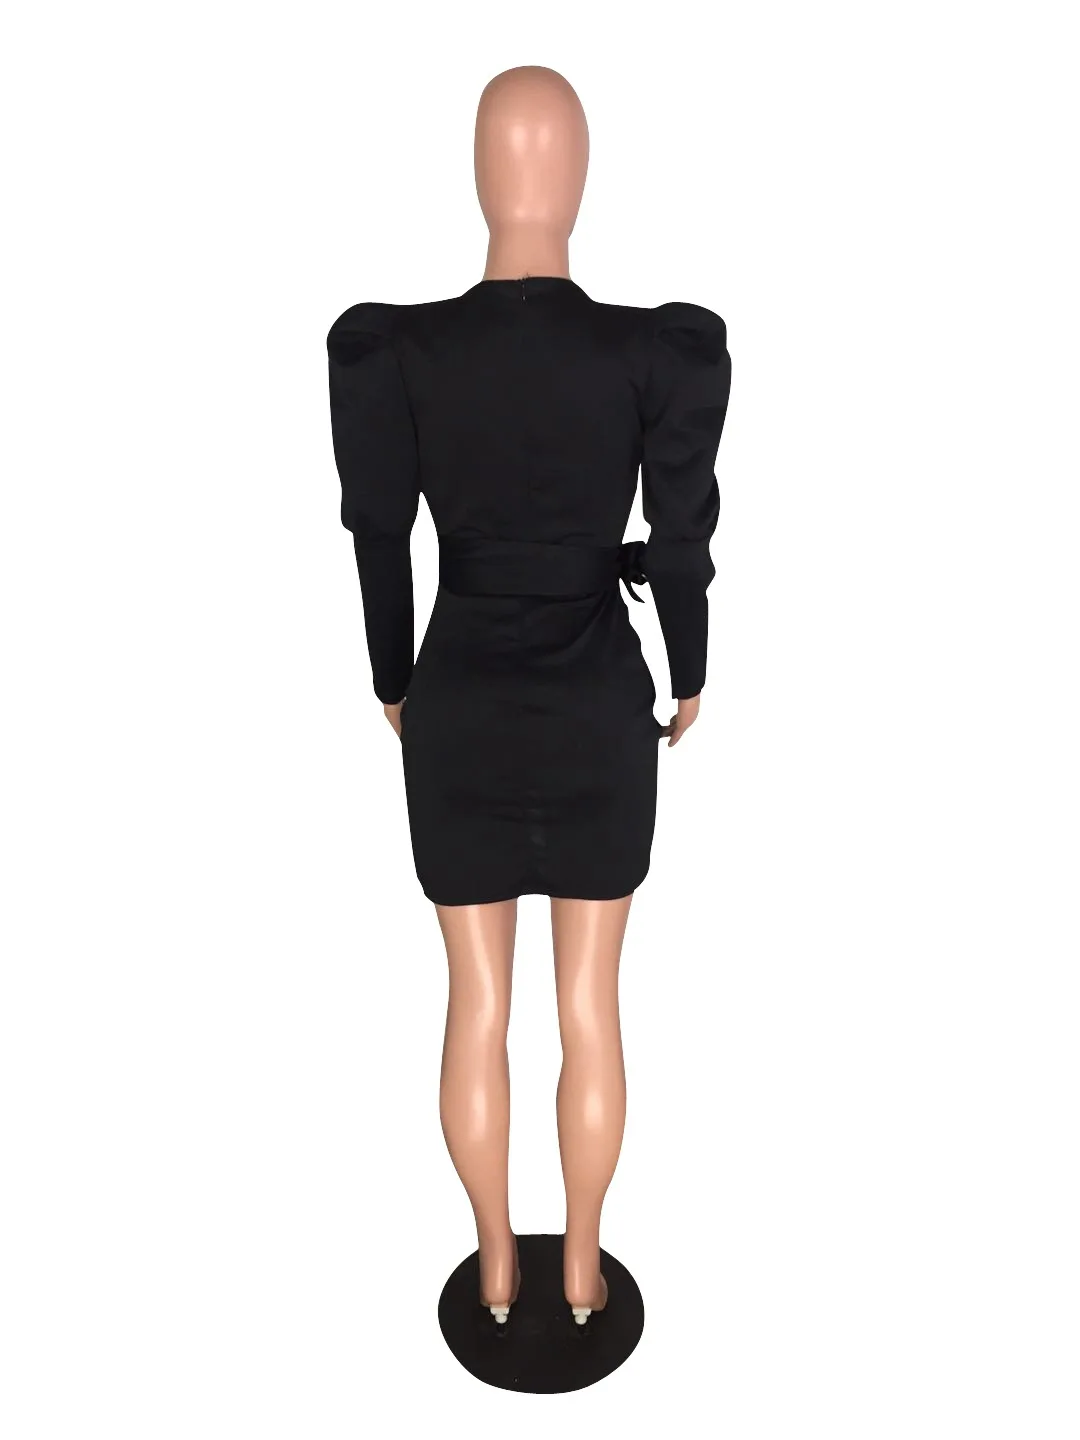 Женское облегающее мини-платье с длинным рукавом-фонариком и глубоким v-образным вырезом, с поясом на талии, черное сексуальное облегающее платье, элегантное стильное платье